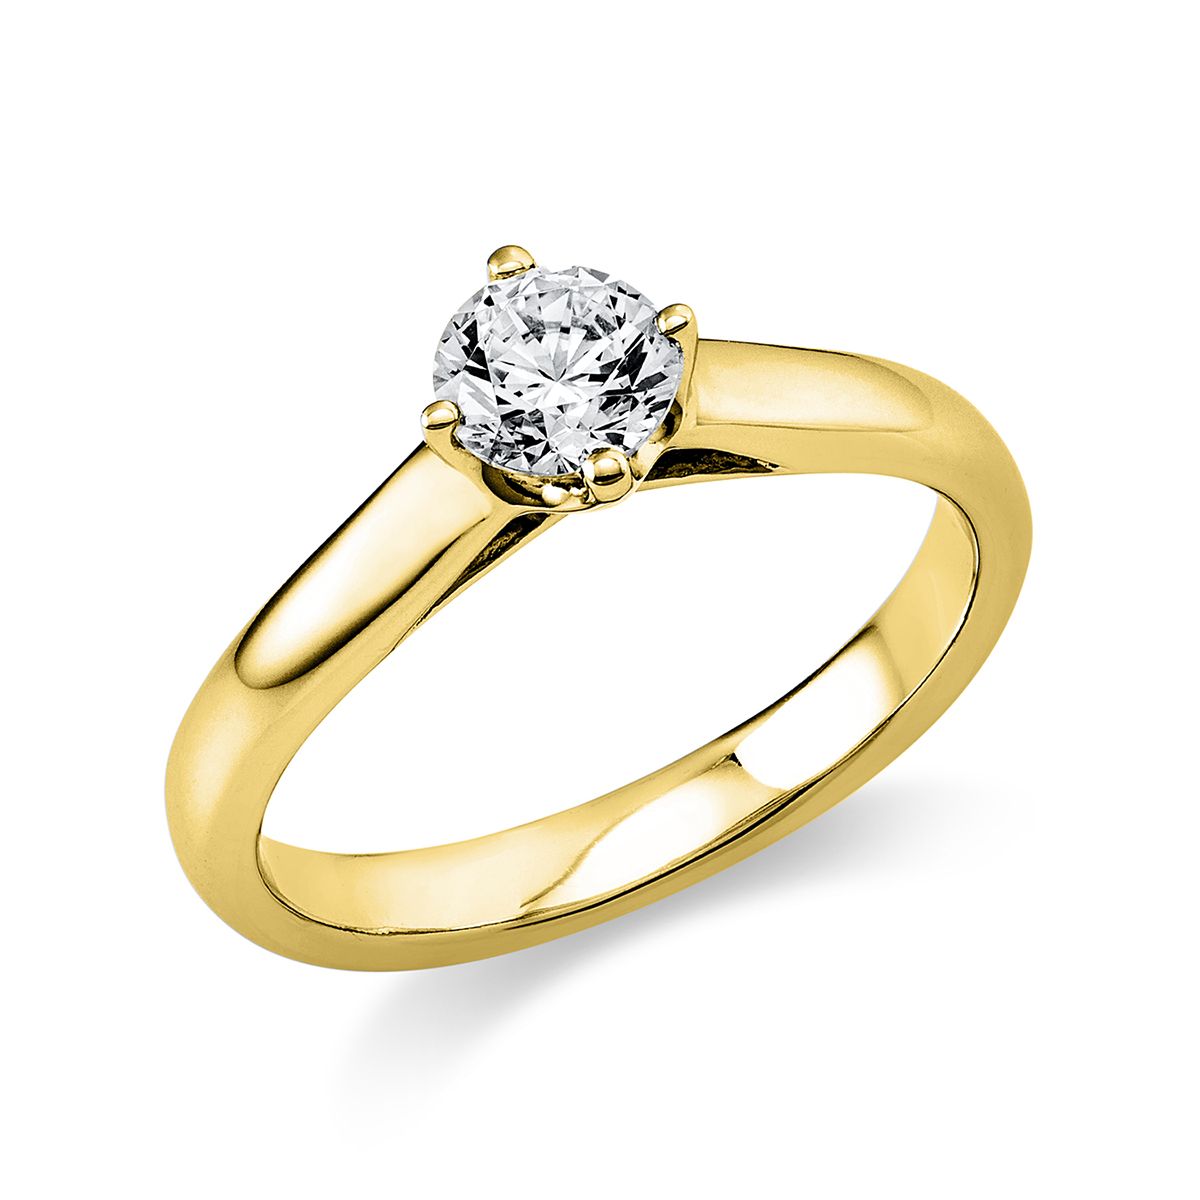 Solitär-Ring 4-Griff-Fassung 585/14K Gelbgold, Diamant 0.5 ct.